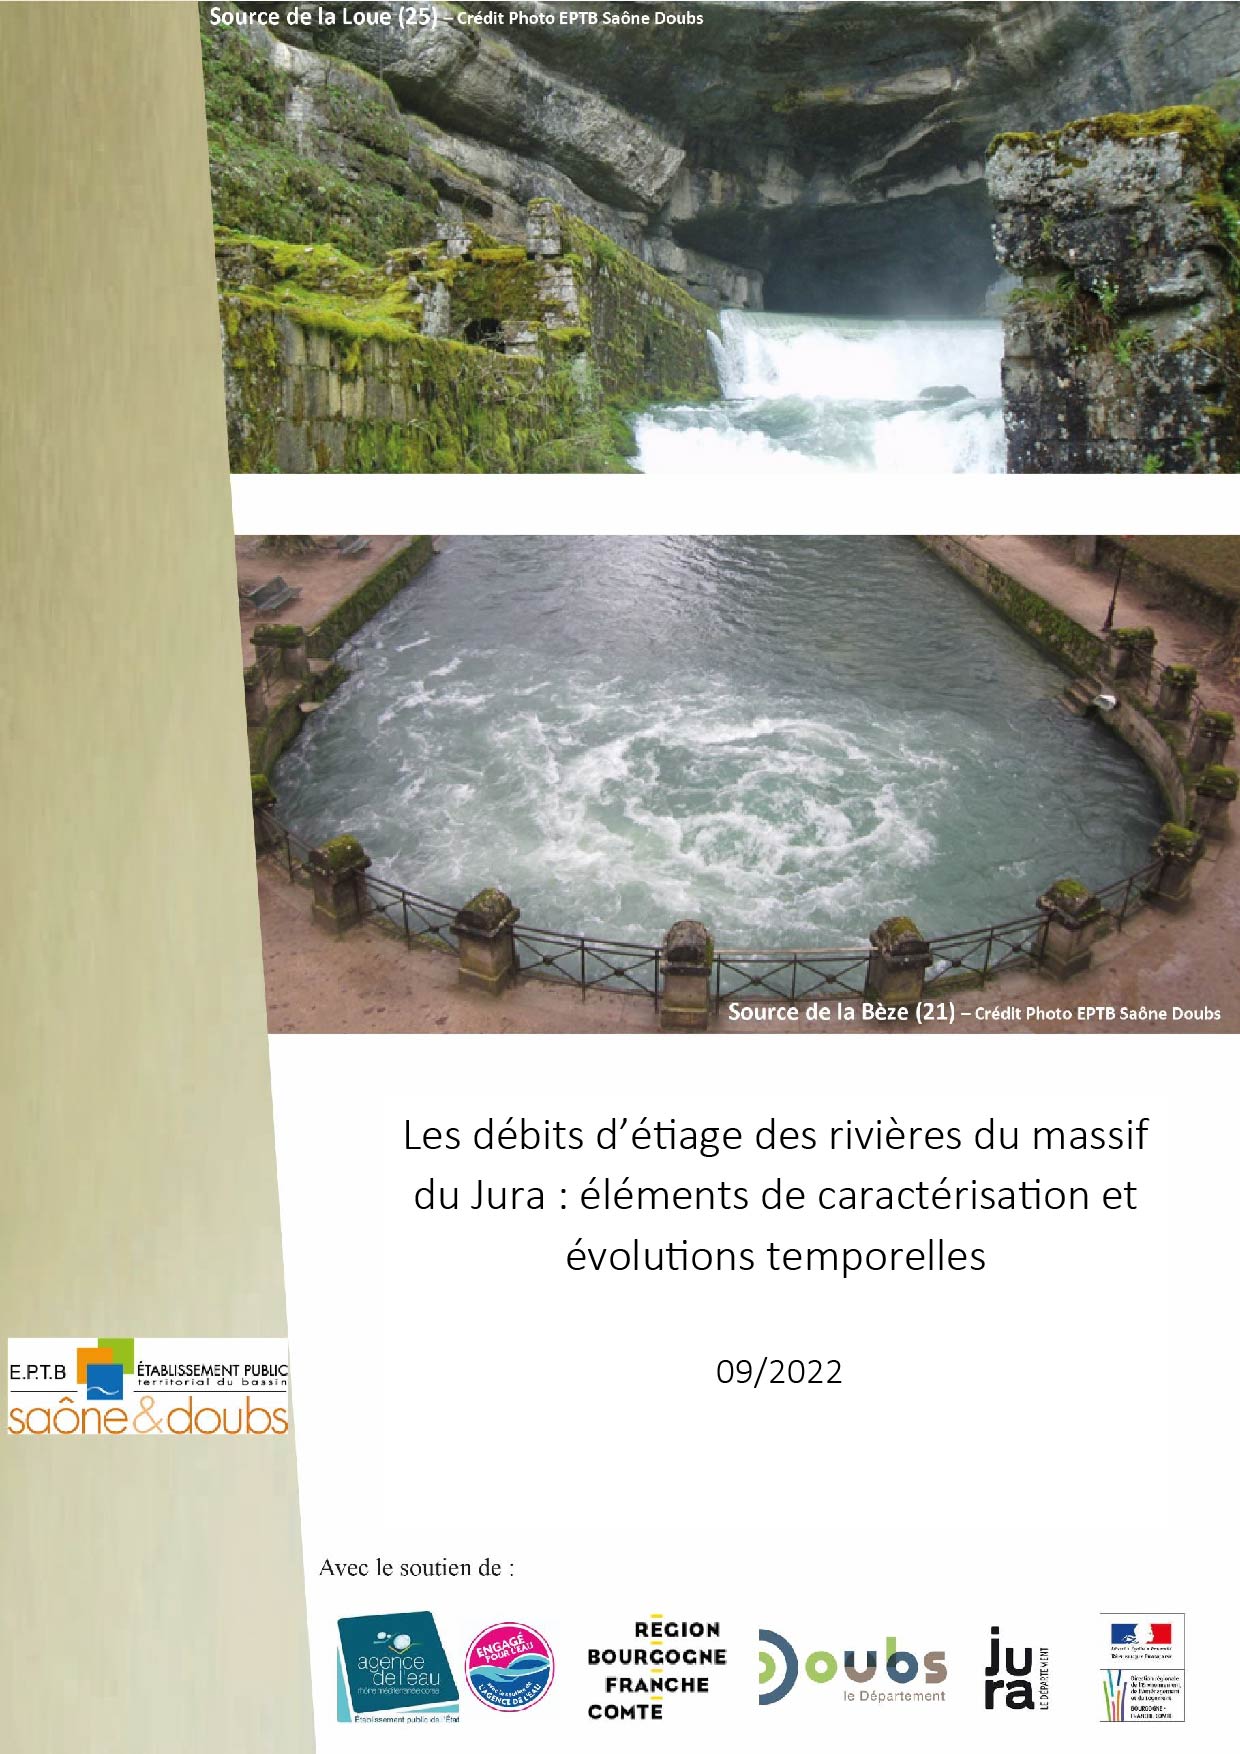 Ce présent document a été réalisé dans le cadre des missions du Pôle Karst (EPTB Saône et Doubs). Son objectif est d’apporter une contribution à la connaissance statistique des débits d’étiage des rivières du massif du Jura dans un contexte marqué par une succession remarquable d’épisodes de basses eaux (2018,2020 et 2022).